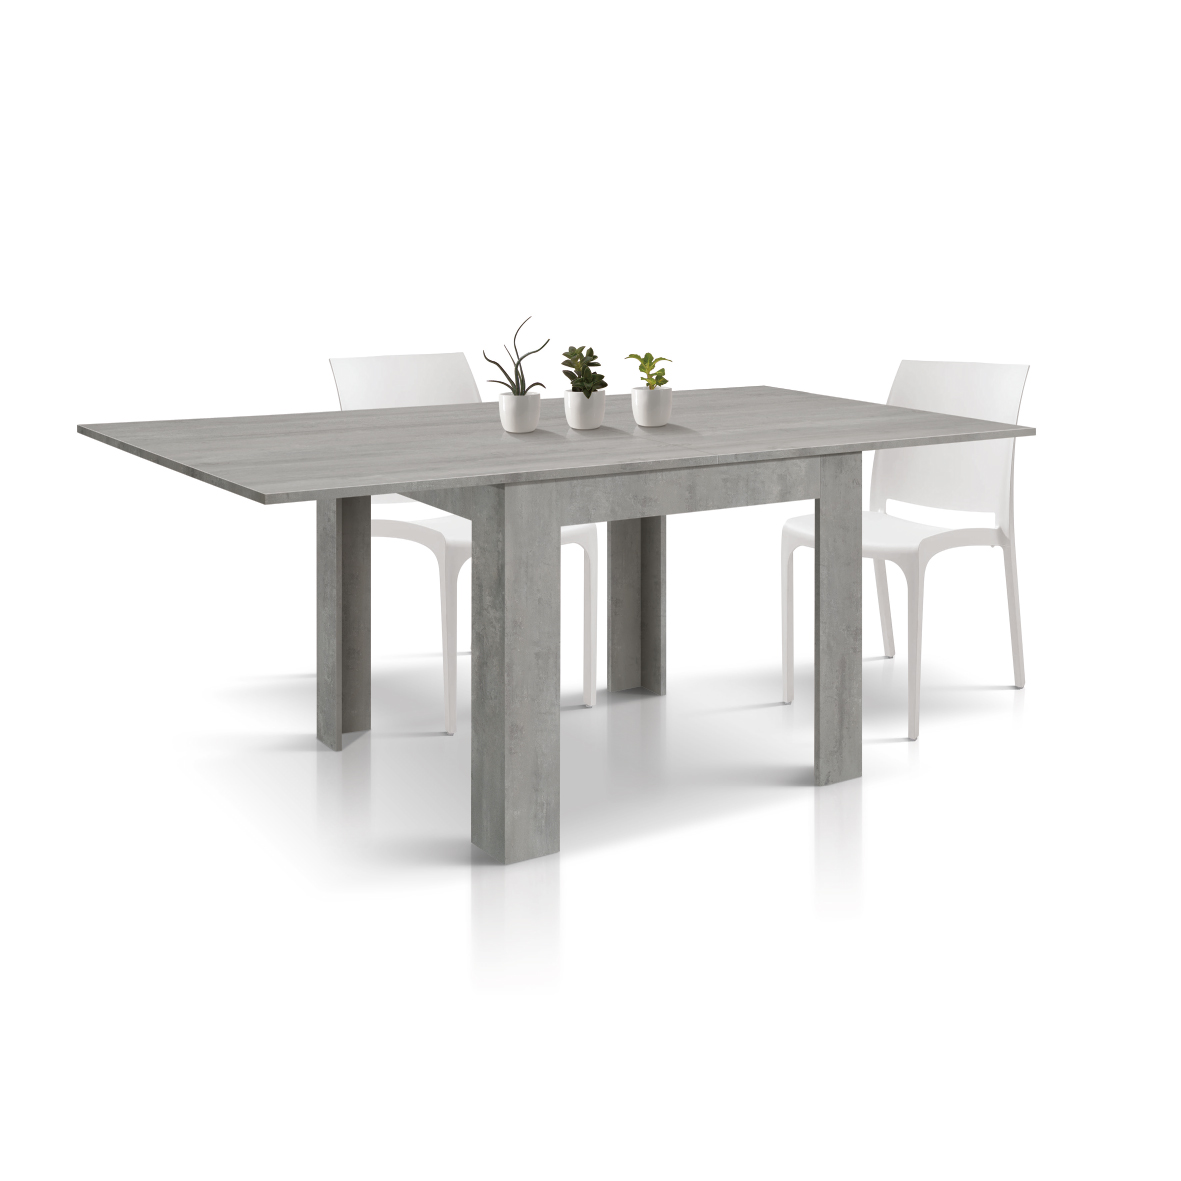 Tavolo da pranzo allungabile cemento, tavoli da cucina allungabili fino a  440 cm con gambe tubolari e telaio antracite. Dimensioni 180x90x77H cm